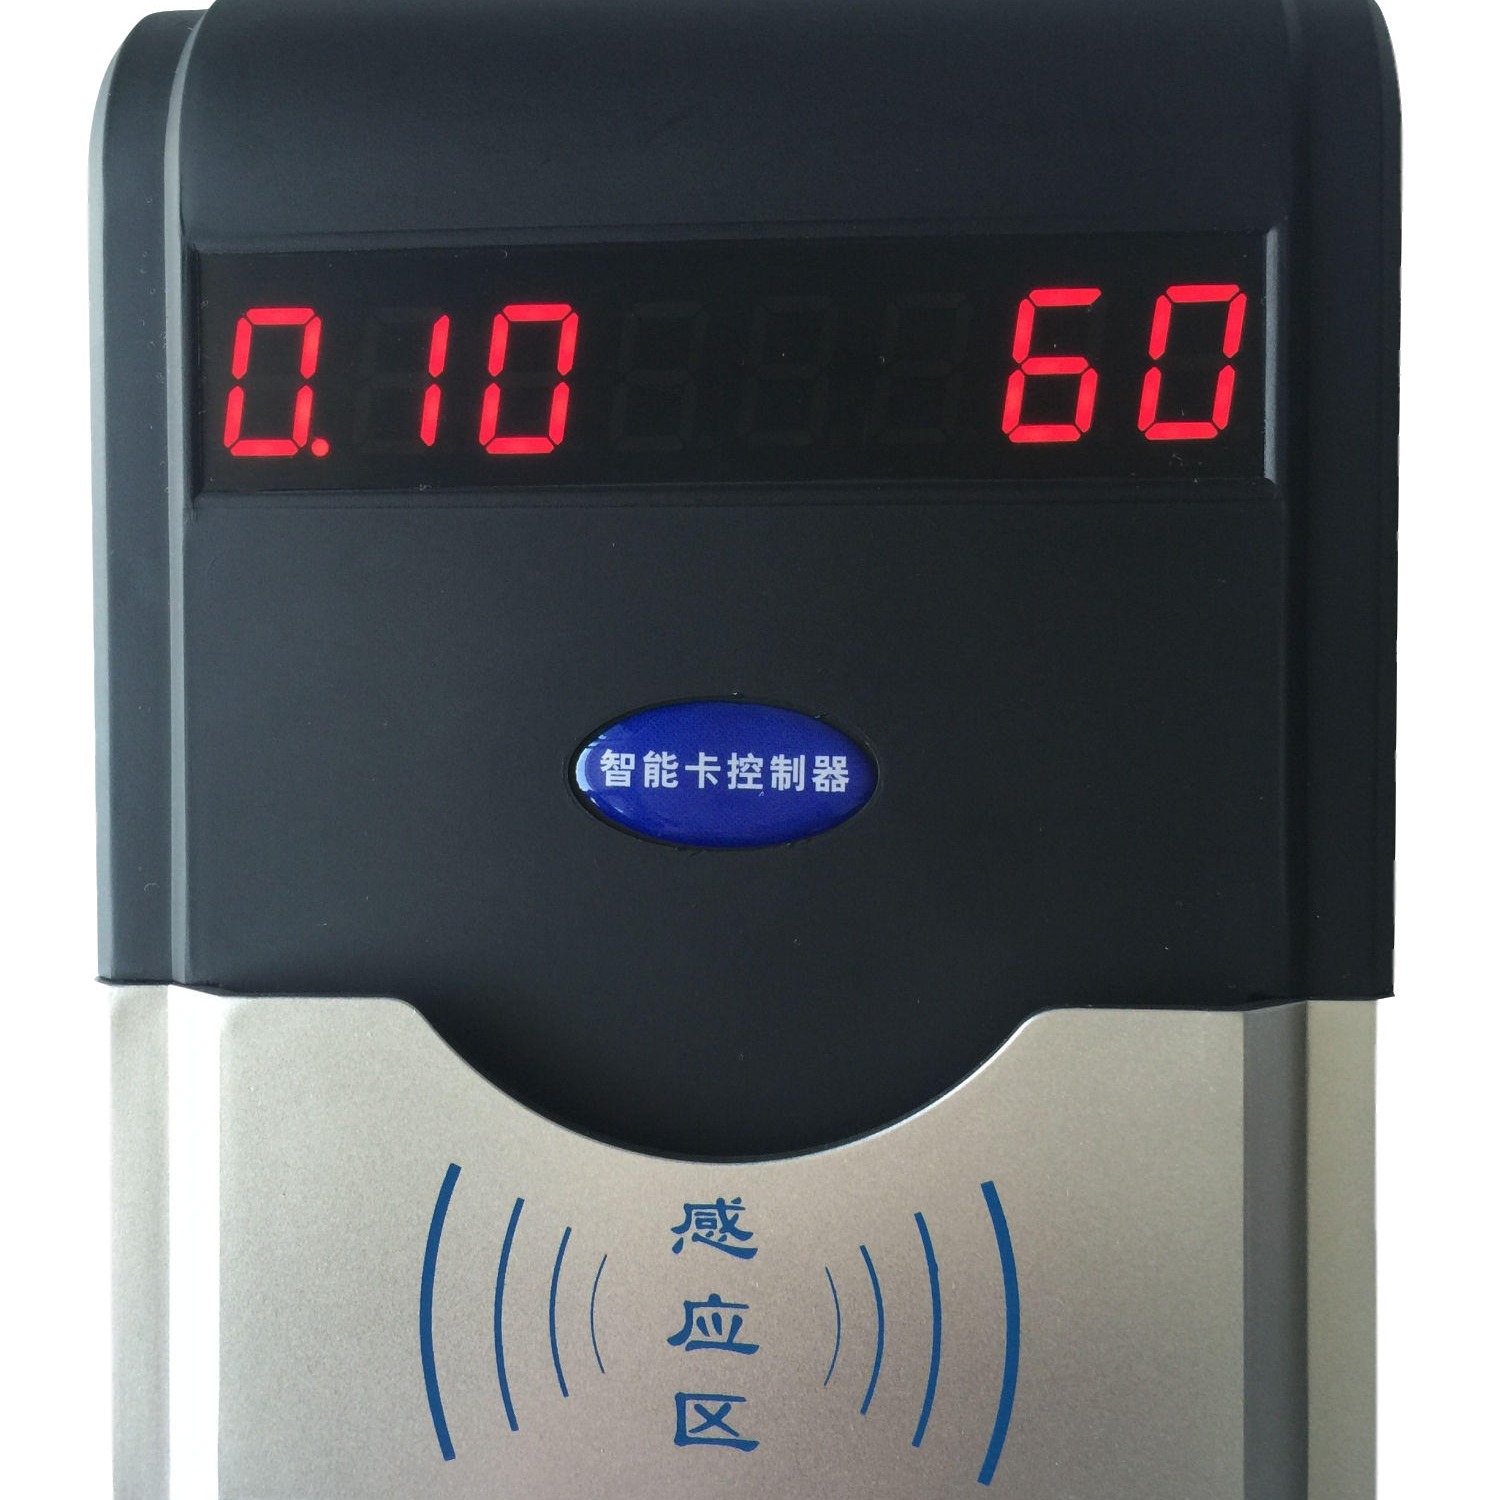 正荣HF-660浴室刷卡水控器,浴室控水器,澡堂水控机